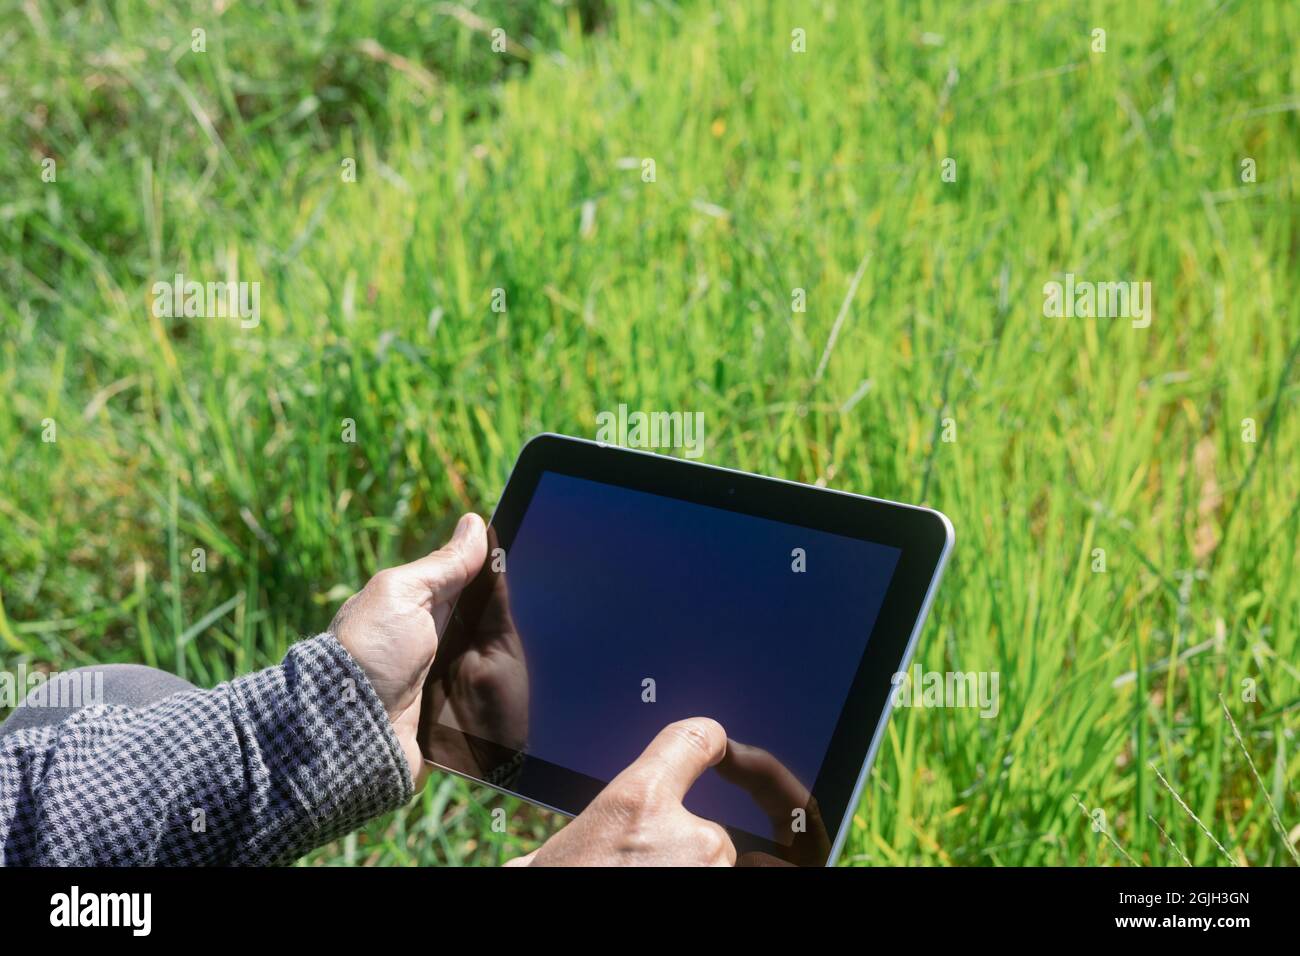 L'agricoltore intelligente utilizza un tablet per monitorare e analizzare le colture nella sua azienda durante una giornata di sole. Foto Stock